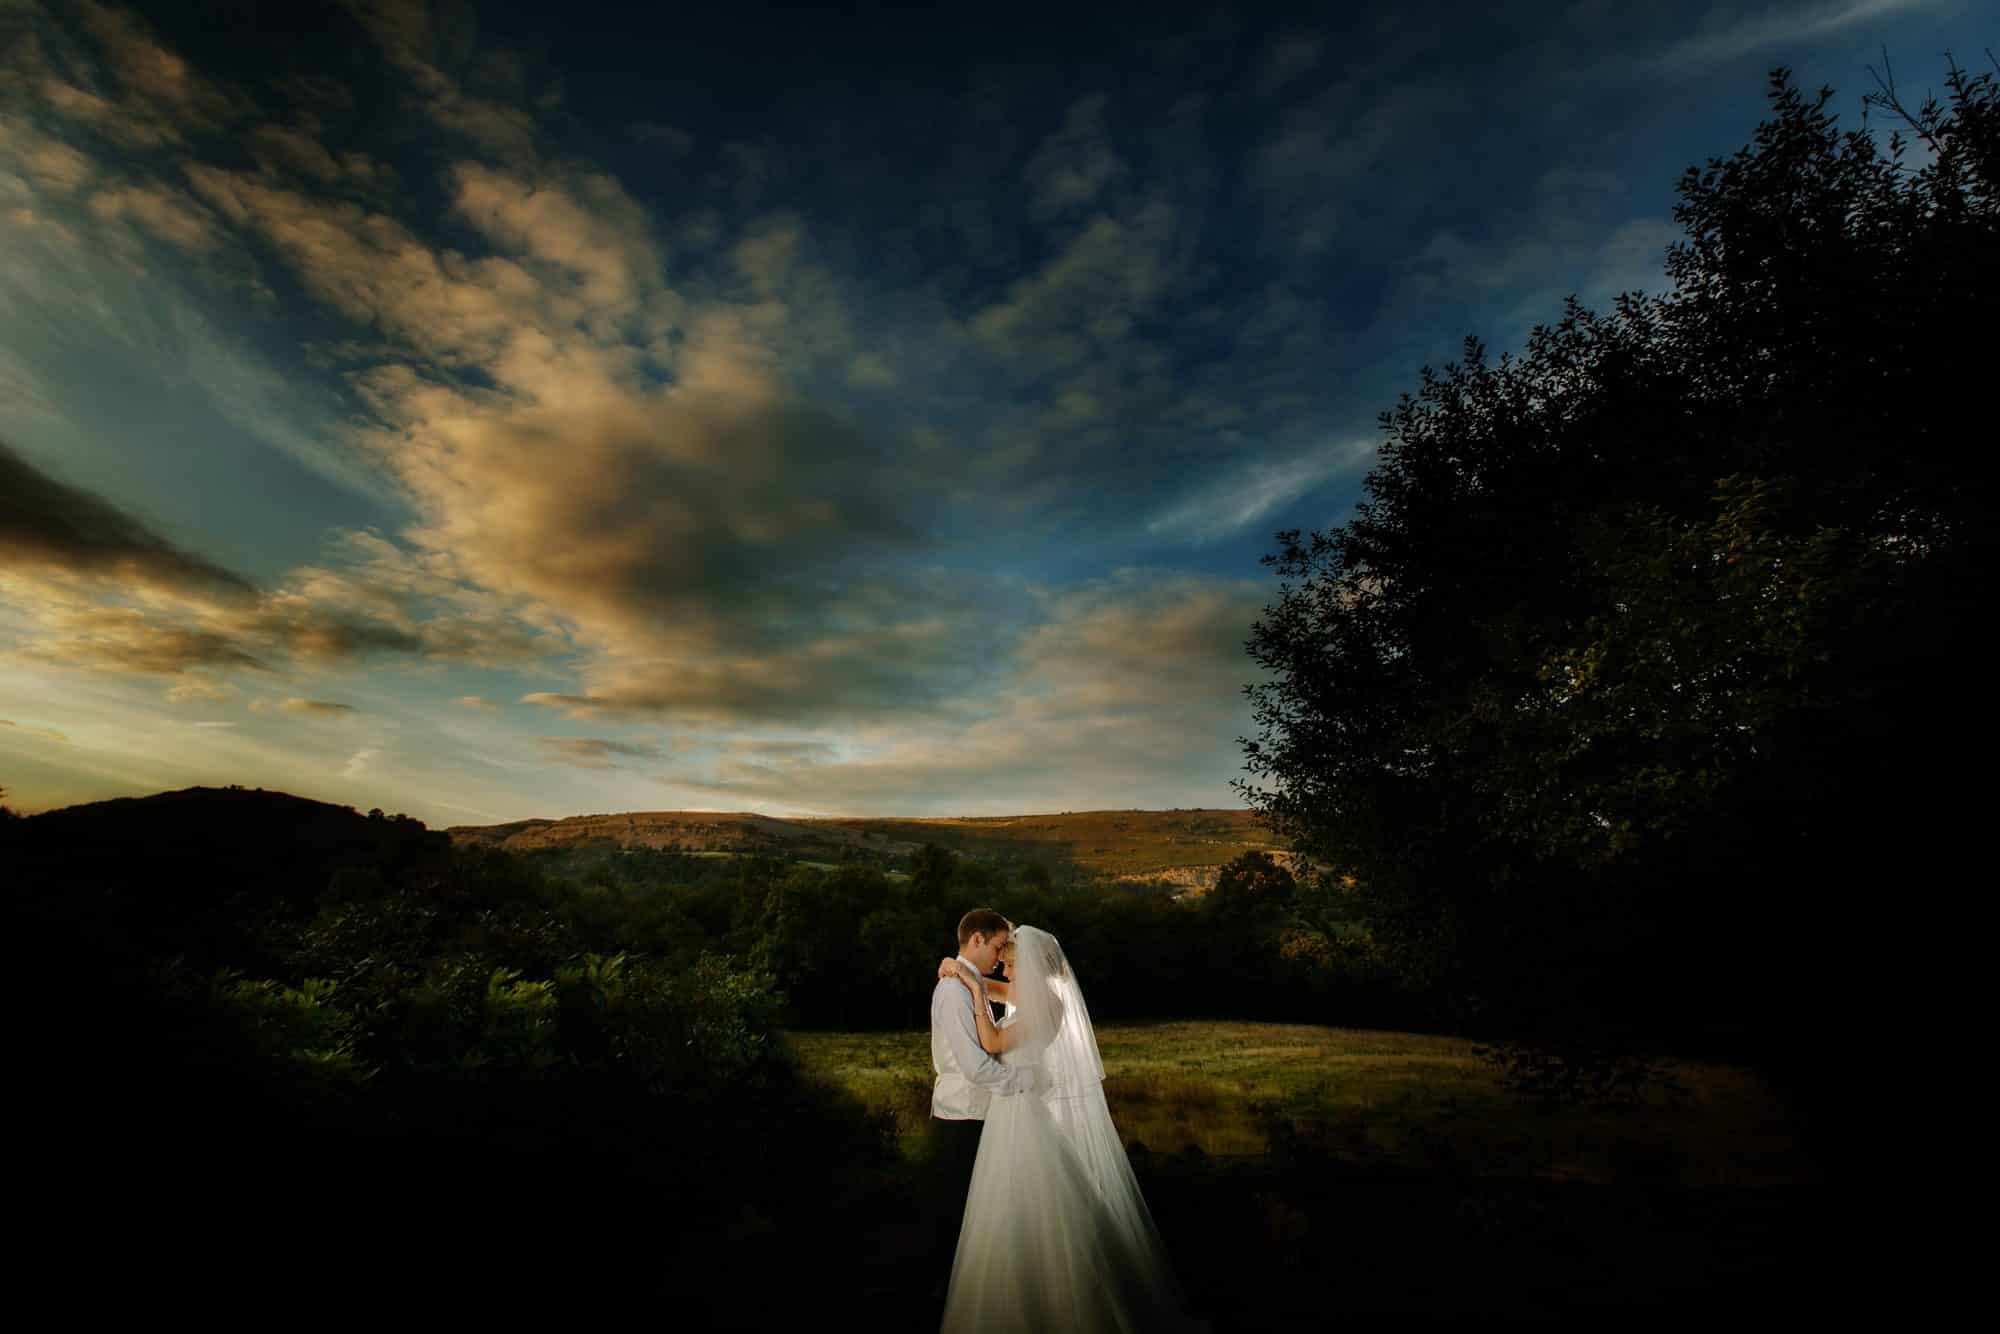 Shropshire documentary wedding photographer captures couple at sunset